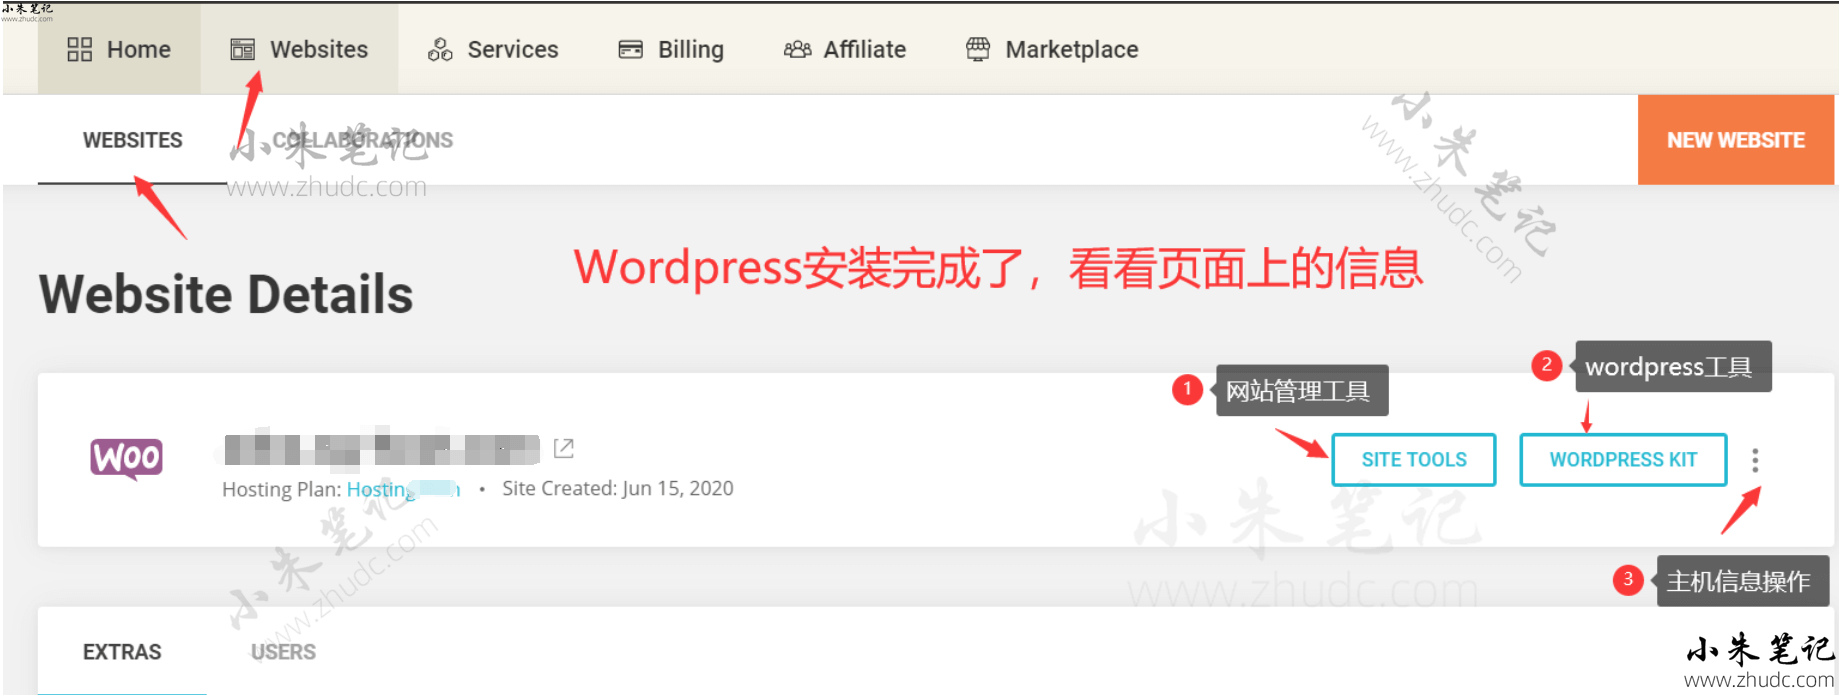 全套完全版Wordpress外贸建站教程 25